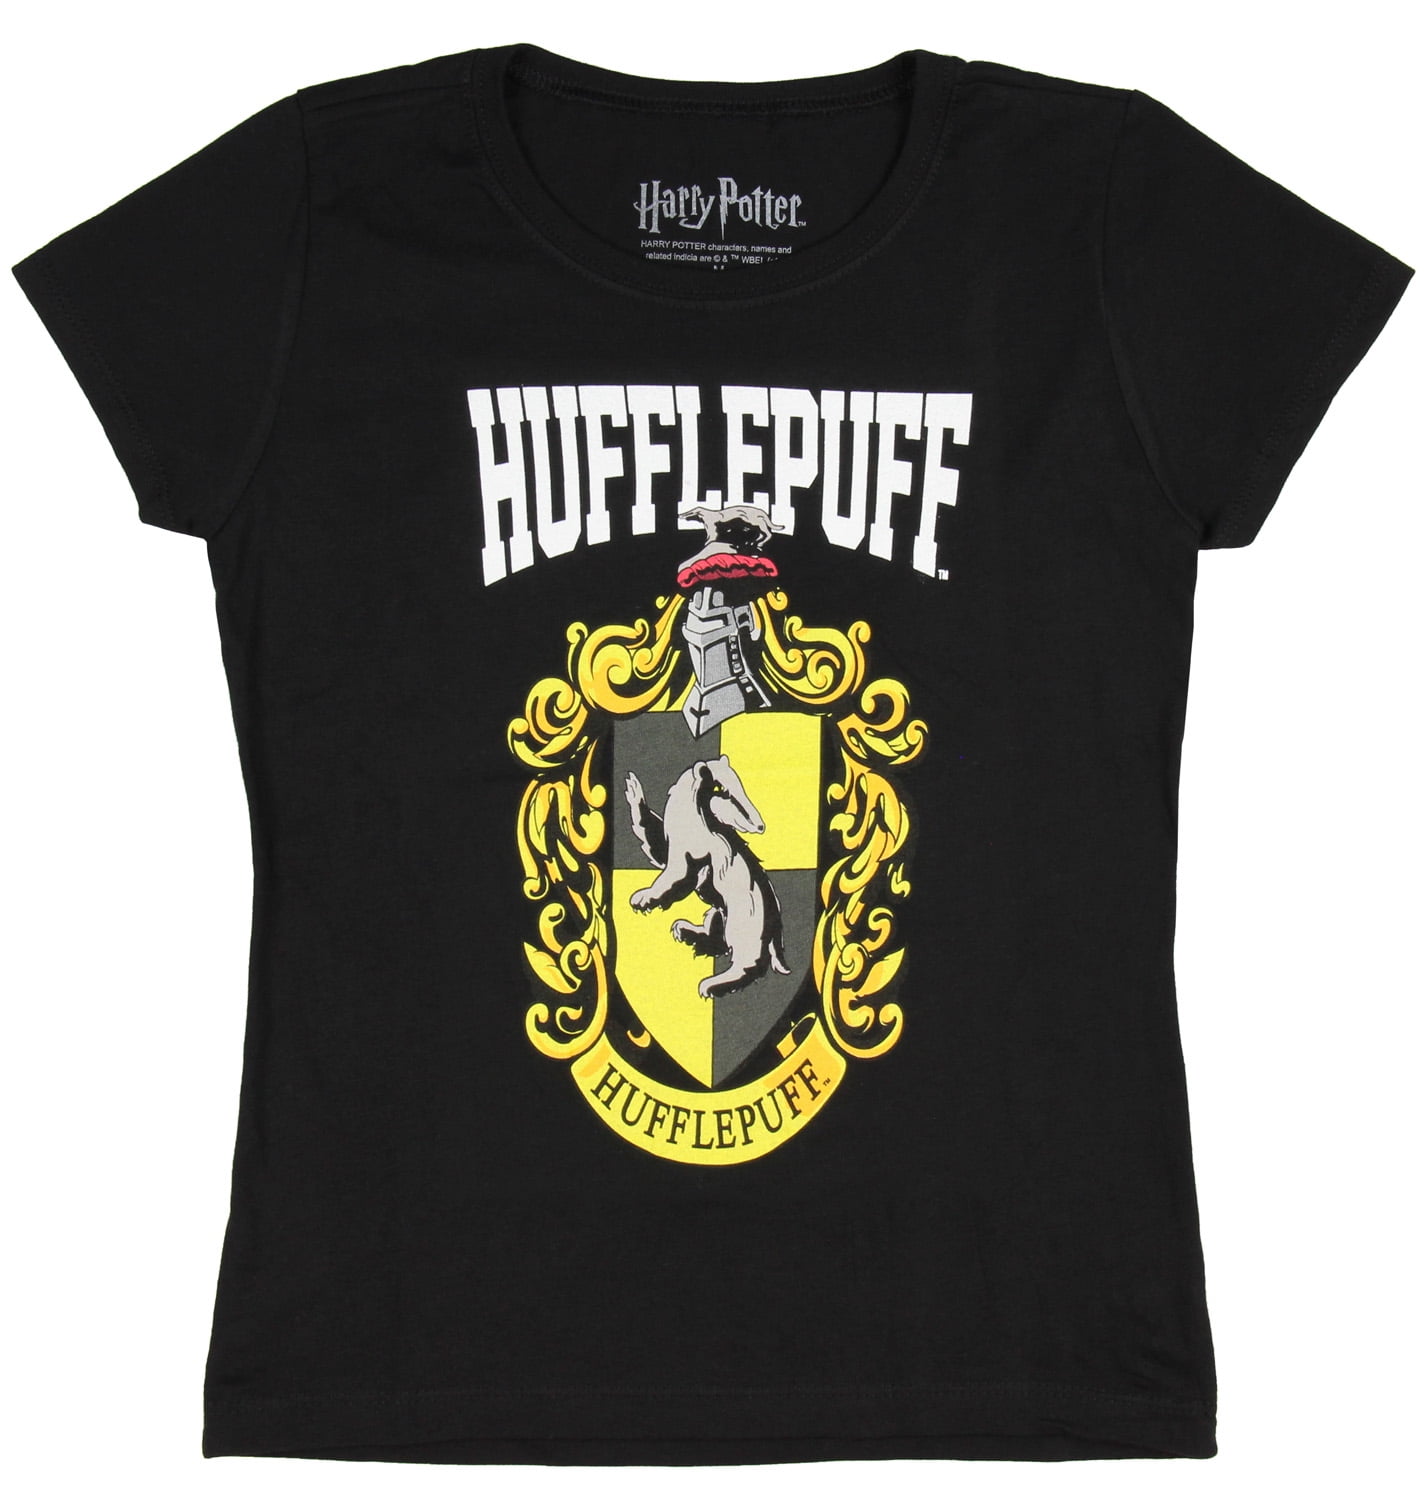 Harry Potter Kids Girls Hogwarts Houses Crest T-Shirt (Hufflepuff, Medium)